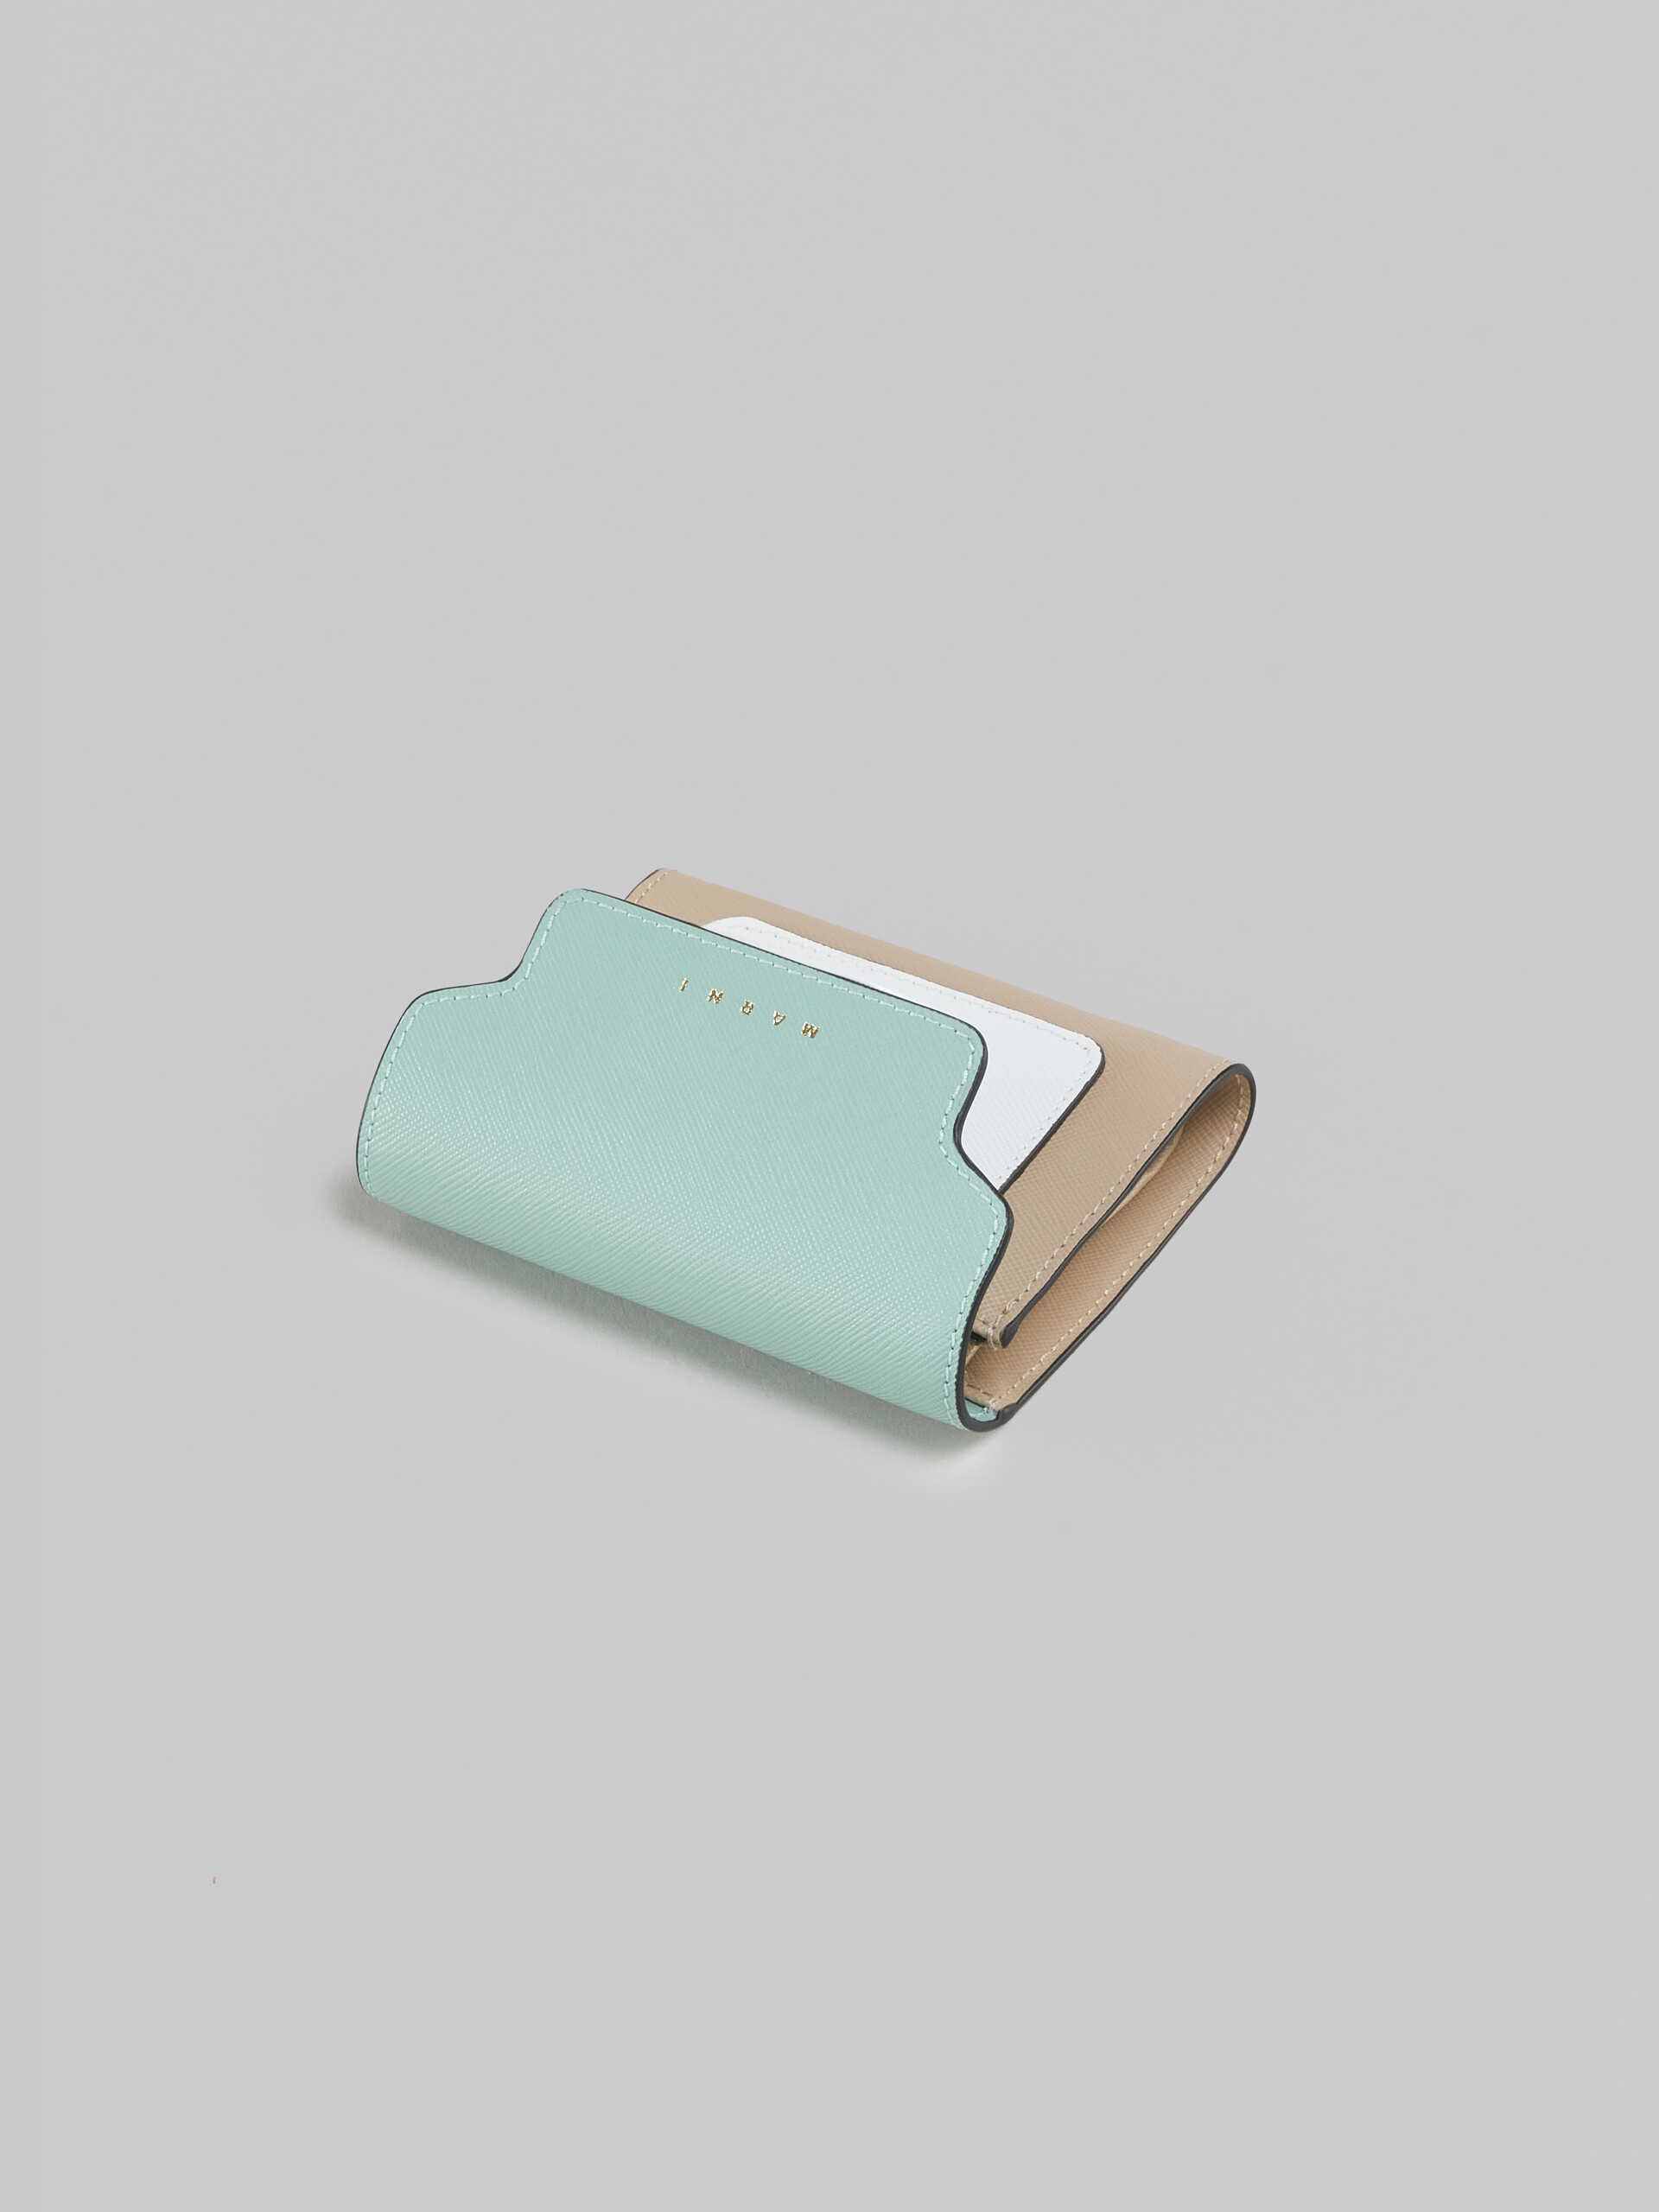 ライトグリーン、ホワイト、ブラウン サフィアーノレザー製ウォレット - 財布 - Image 4